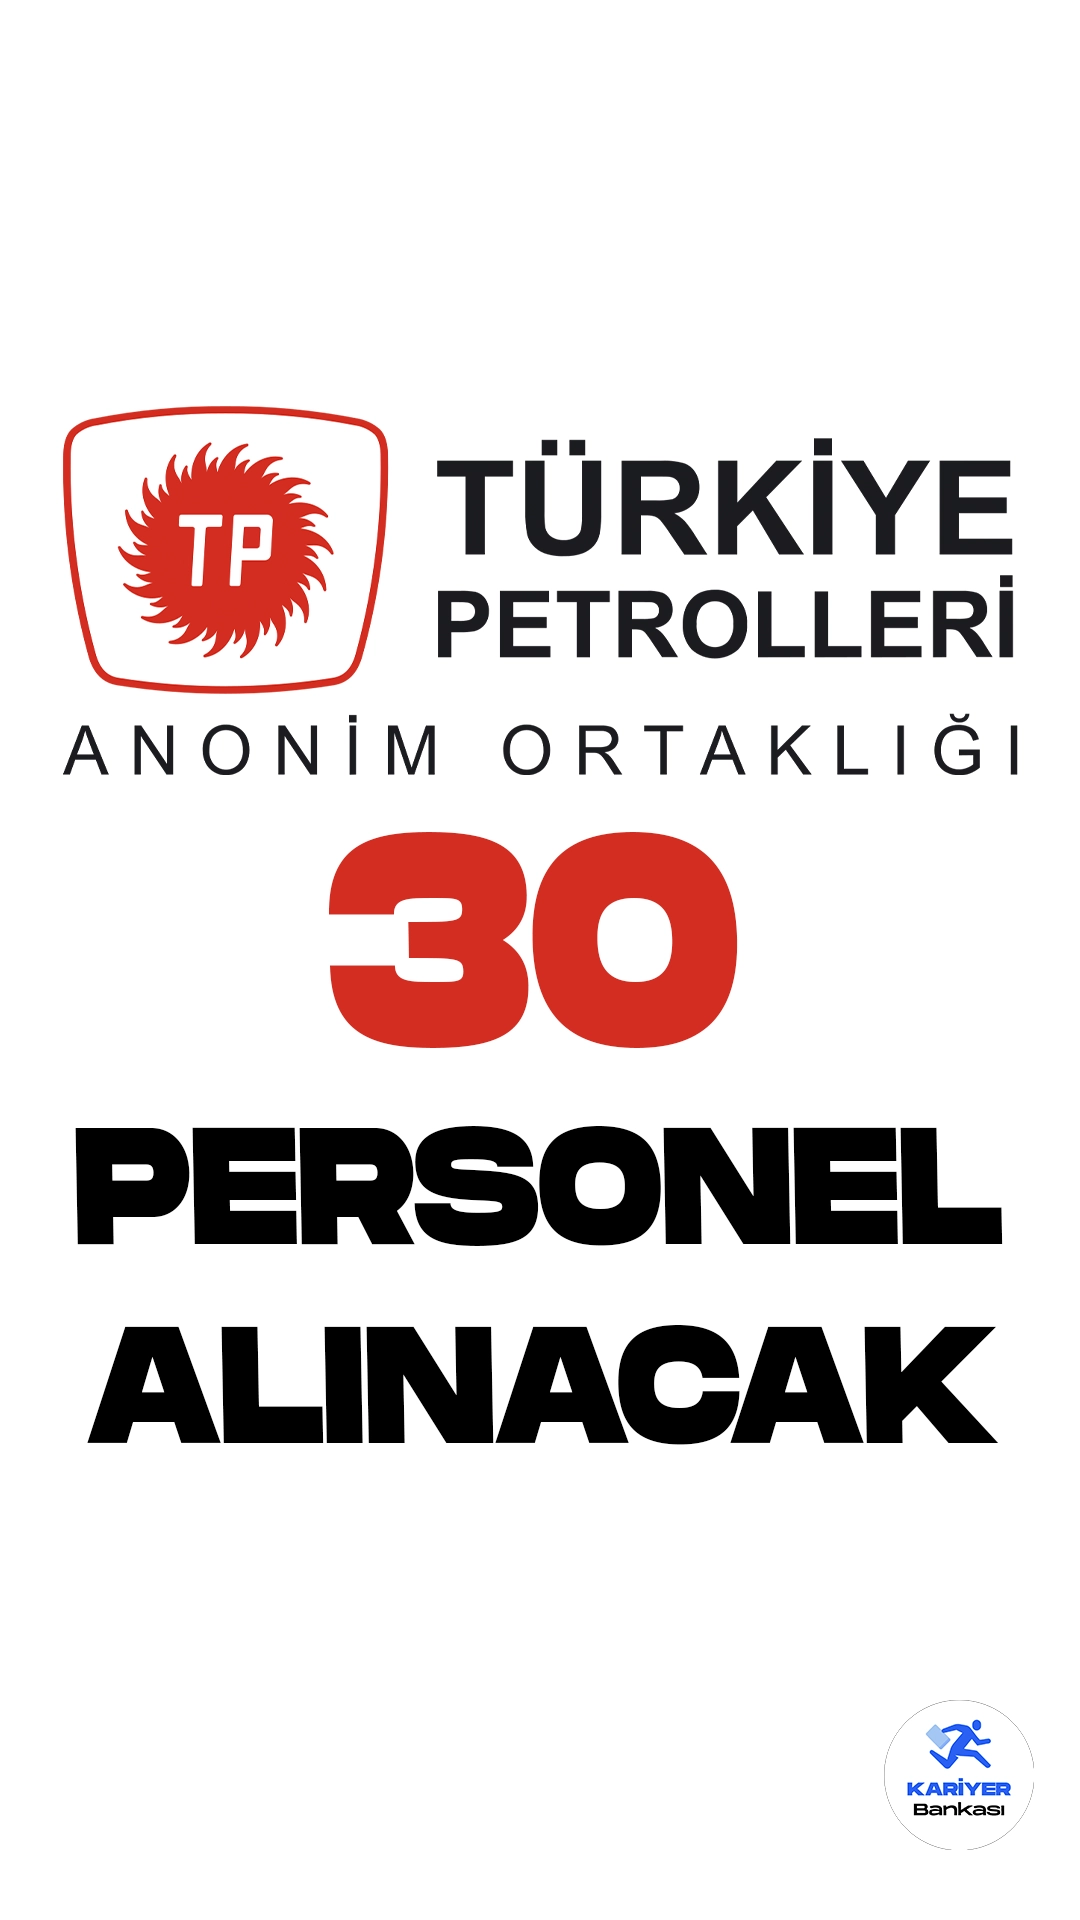 Türkiye Petrolleri Anonim Ortaklığı (TPAO) personel alımı duyurusu yayımlandı. Cumhurbaşkanlığı SBB'de yayımlanan duyuruda, TPAO'ya üretim operatör yardımcısı, elektrikçi, ambarcı, harita teknisyeni-b, inşaat teknisyeni-b, sağlık görevlisi, laboratuvar sorumlusu-b ünvanlarında olmak üzere 30 personel alımı yapılacağı aktarıldı.